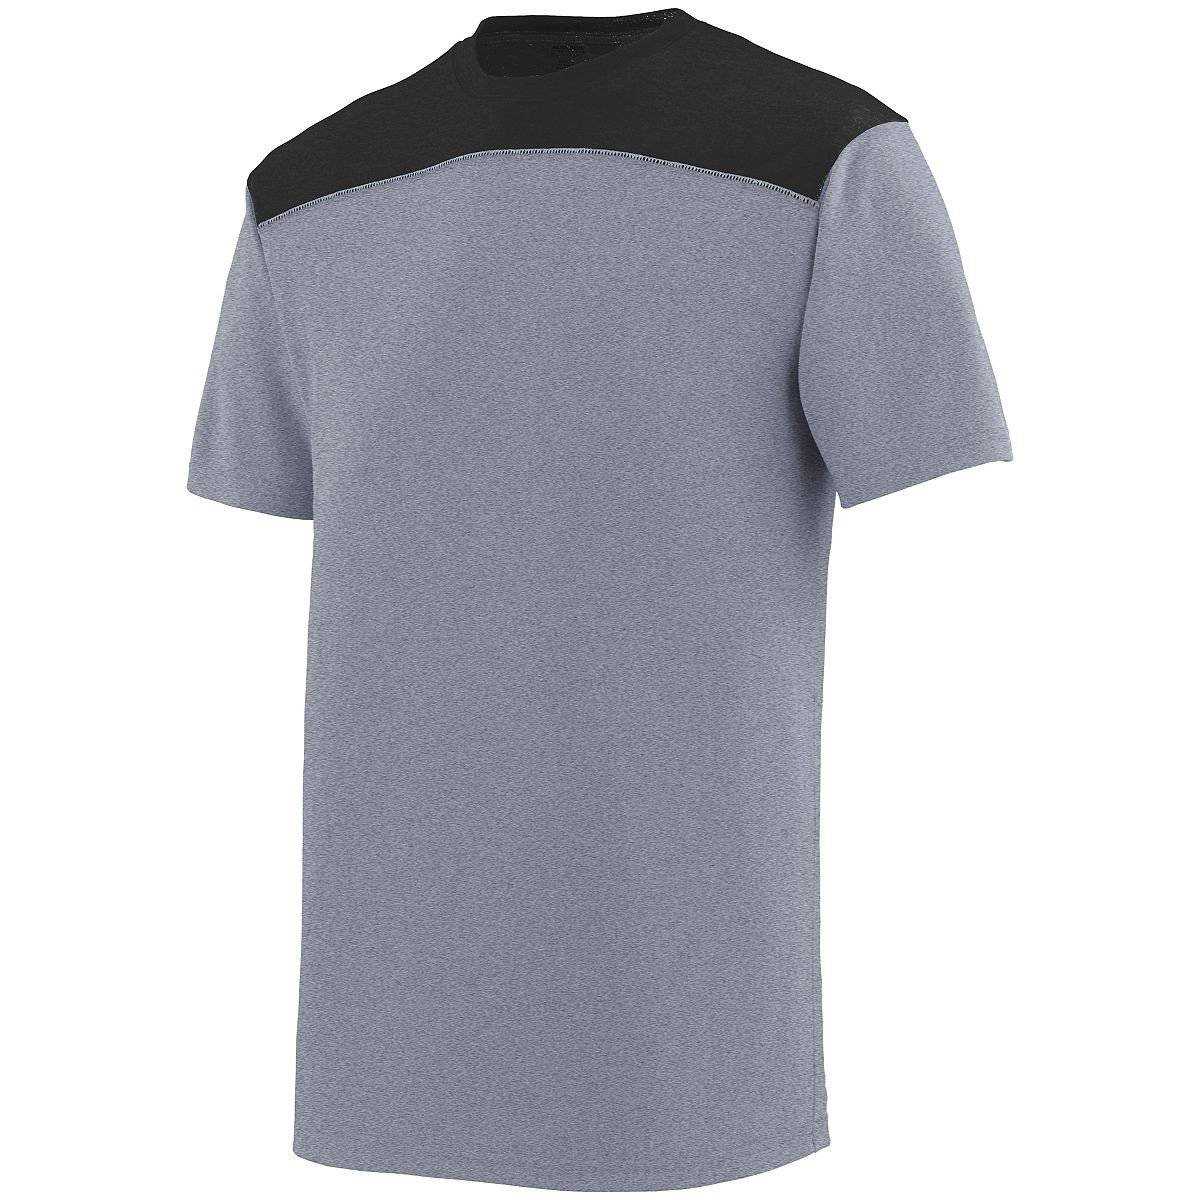 Augusta 3055 Challenge T-Shirt - Dark Gray Black - HIT a Double